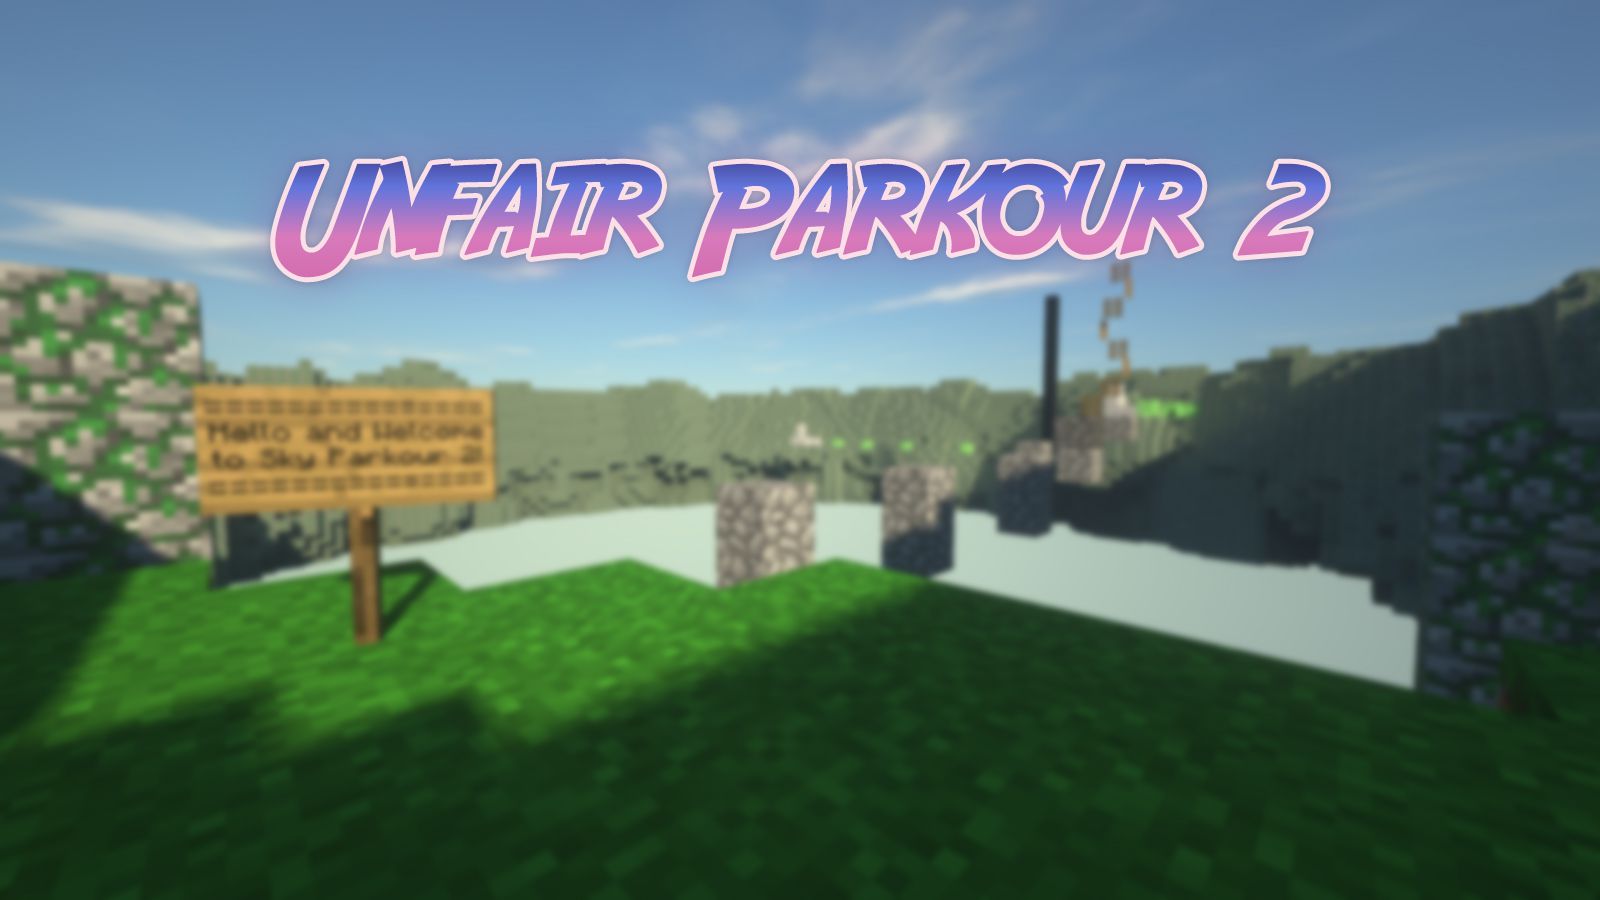 Unfair Parkour 2 Map Thumbnail